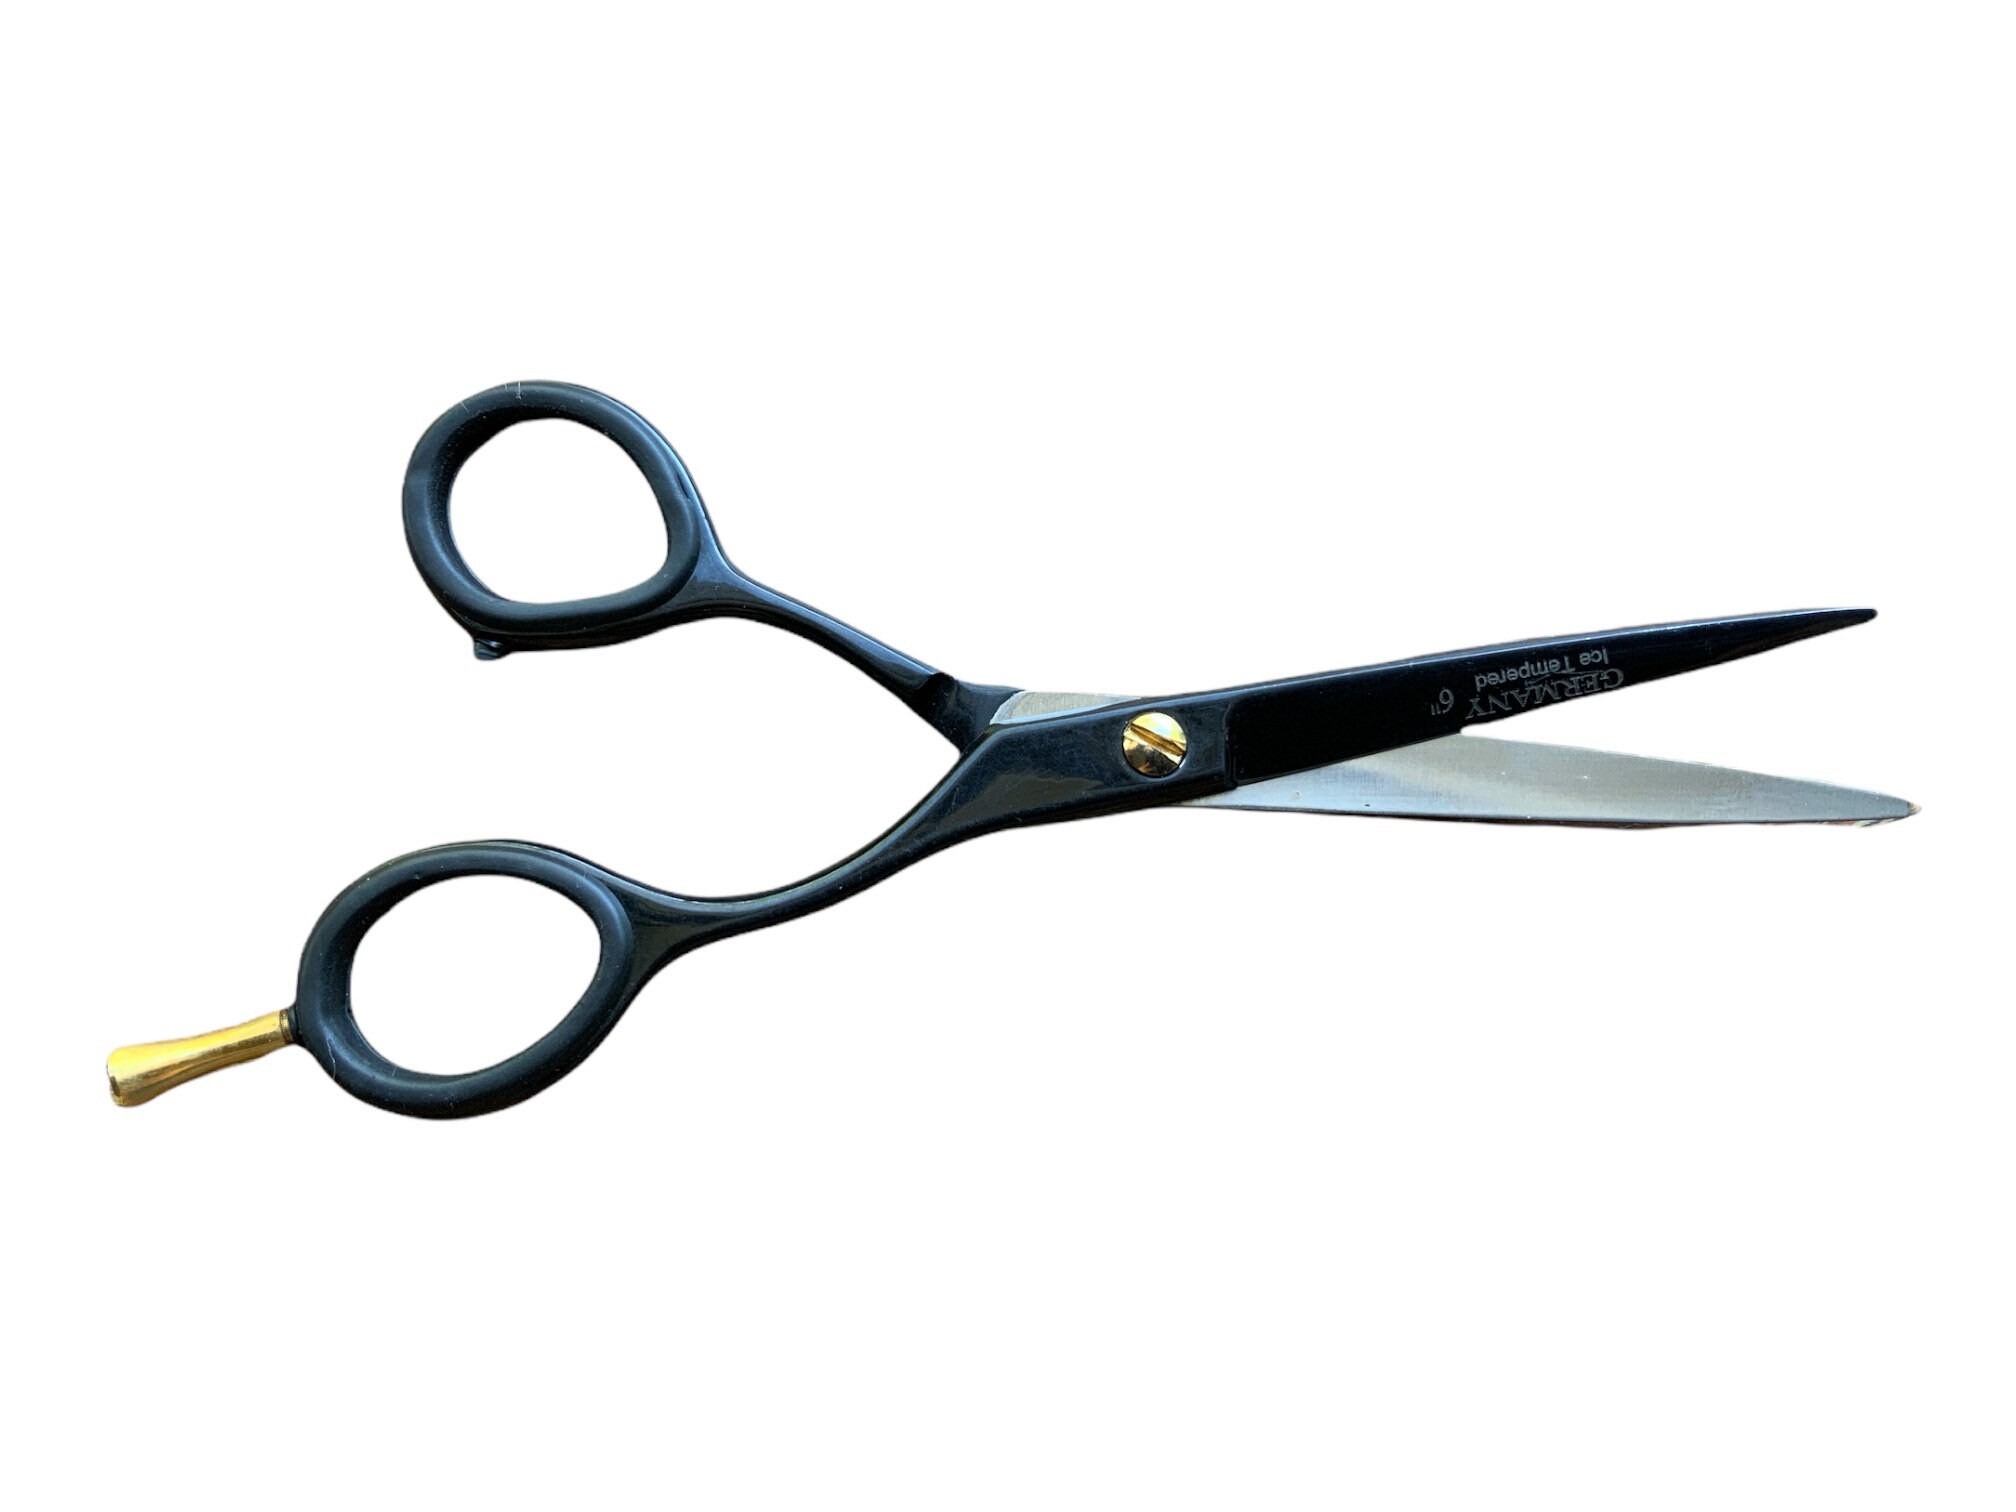 Shear & Scissor Sharpener - Lee Valley Tools